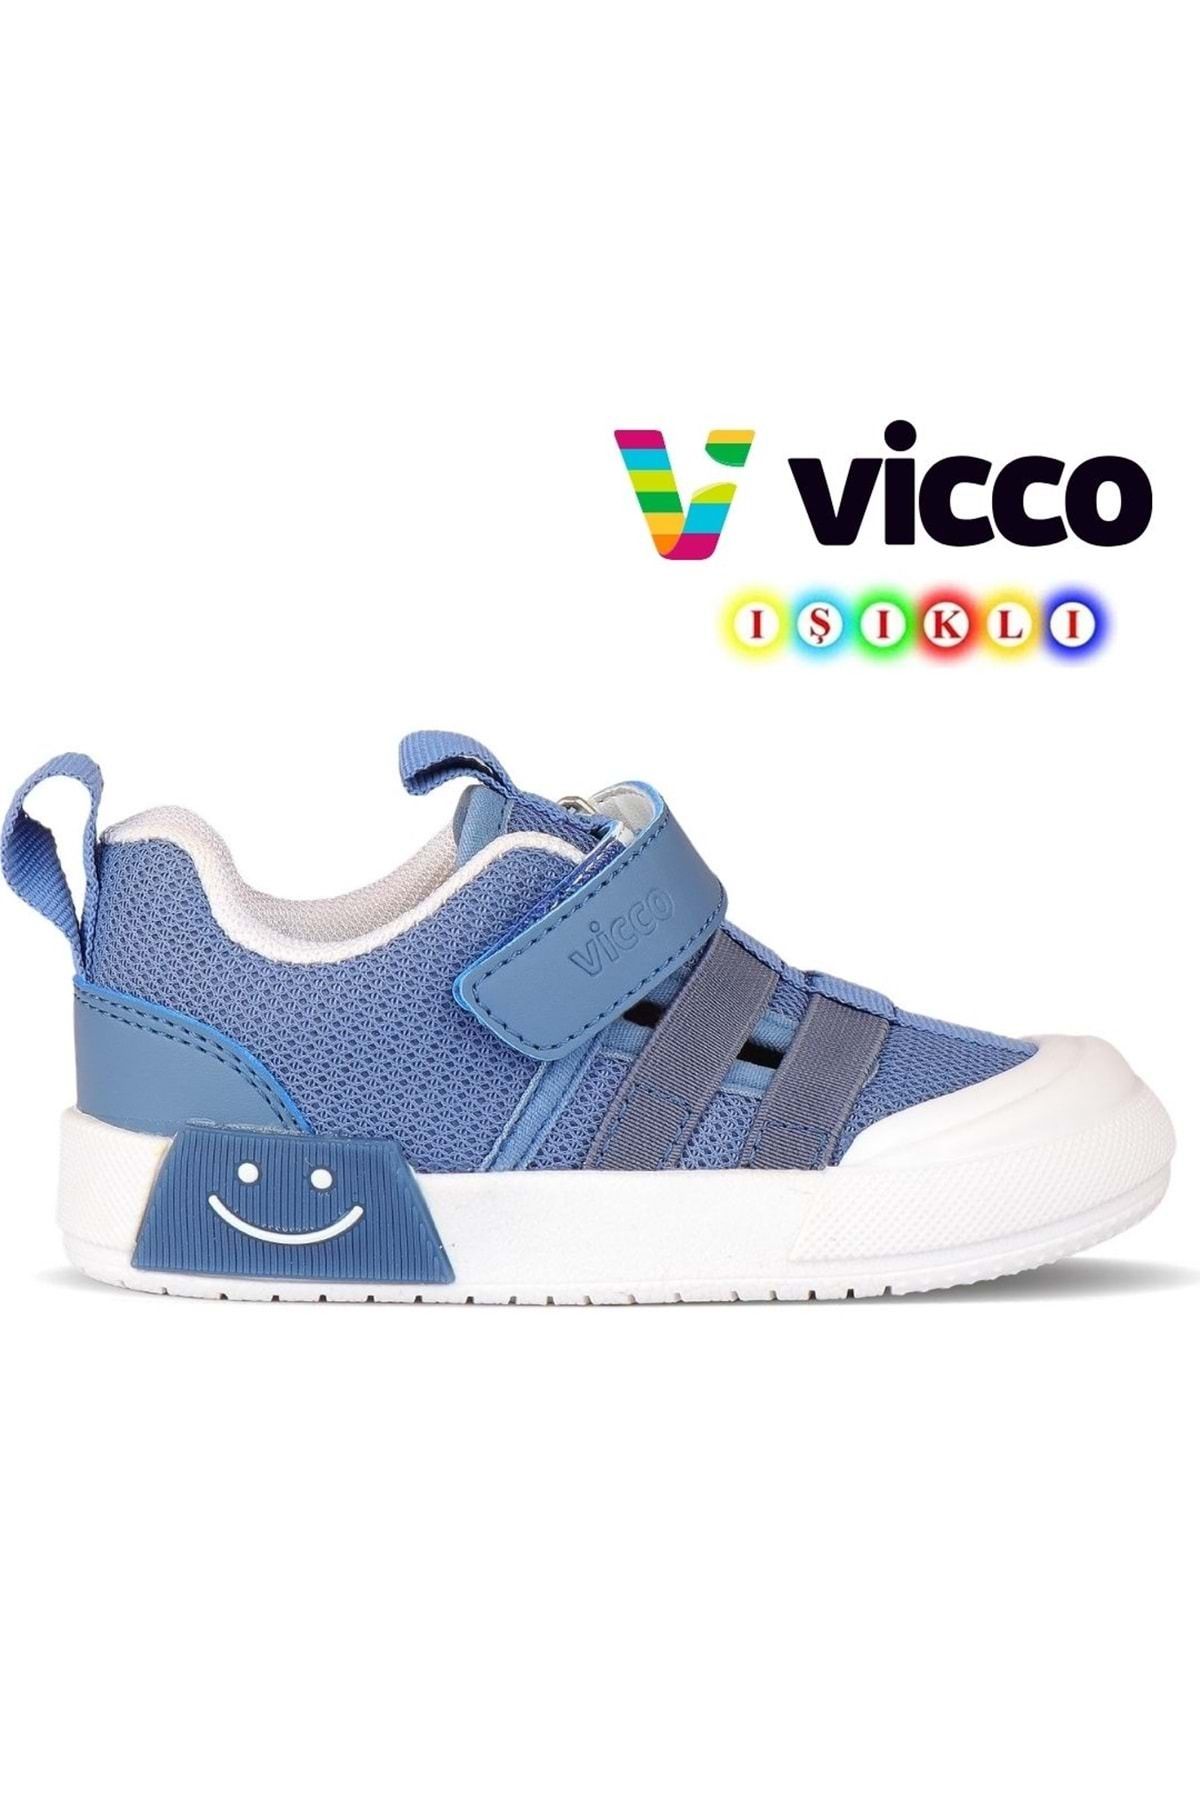 Kids Club Shoes Vicco Momo Işıklı Ortopedik Çocuk Spor Ayakkabı KOT